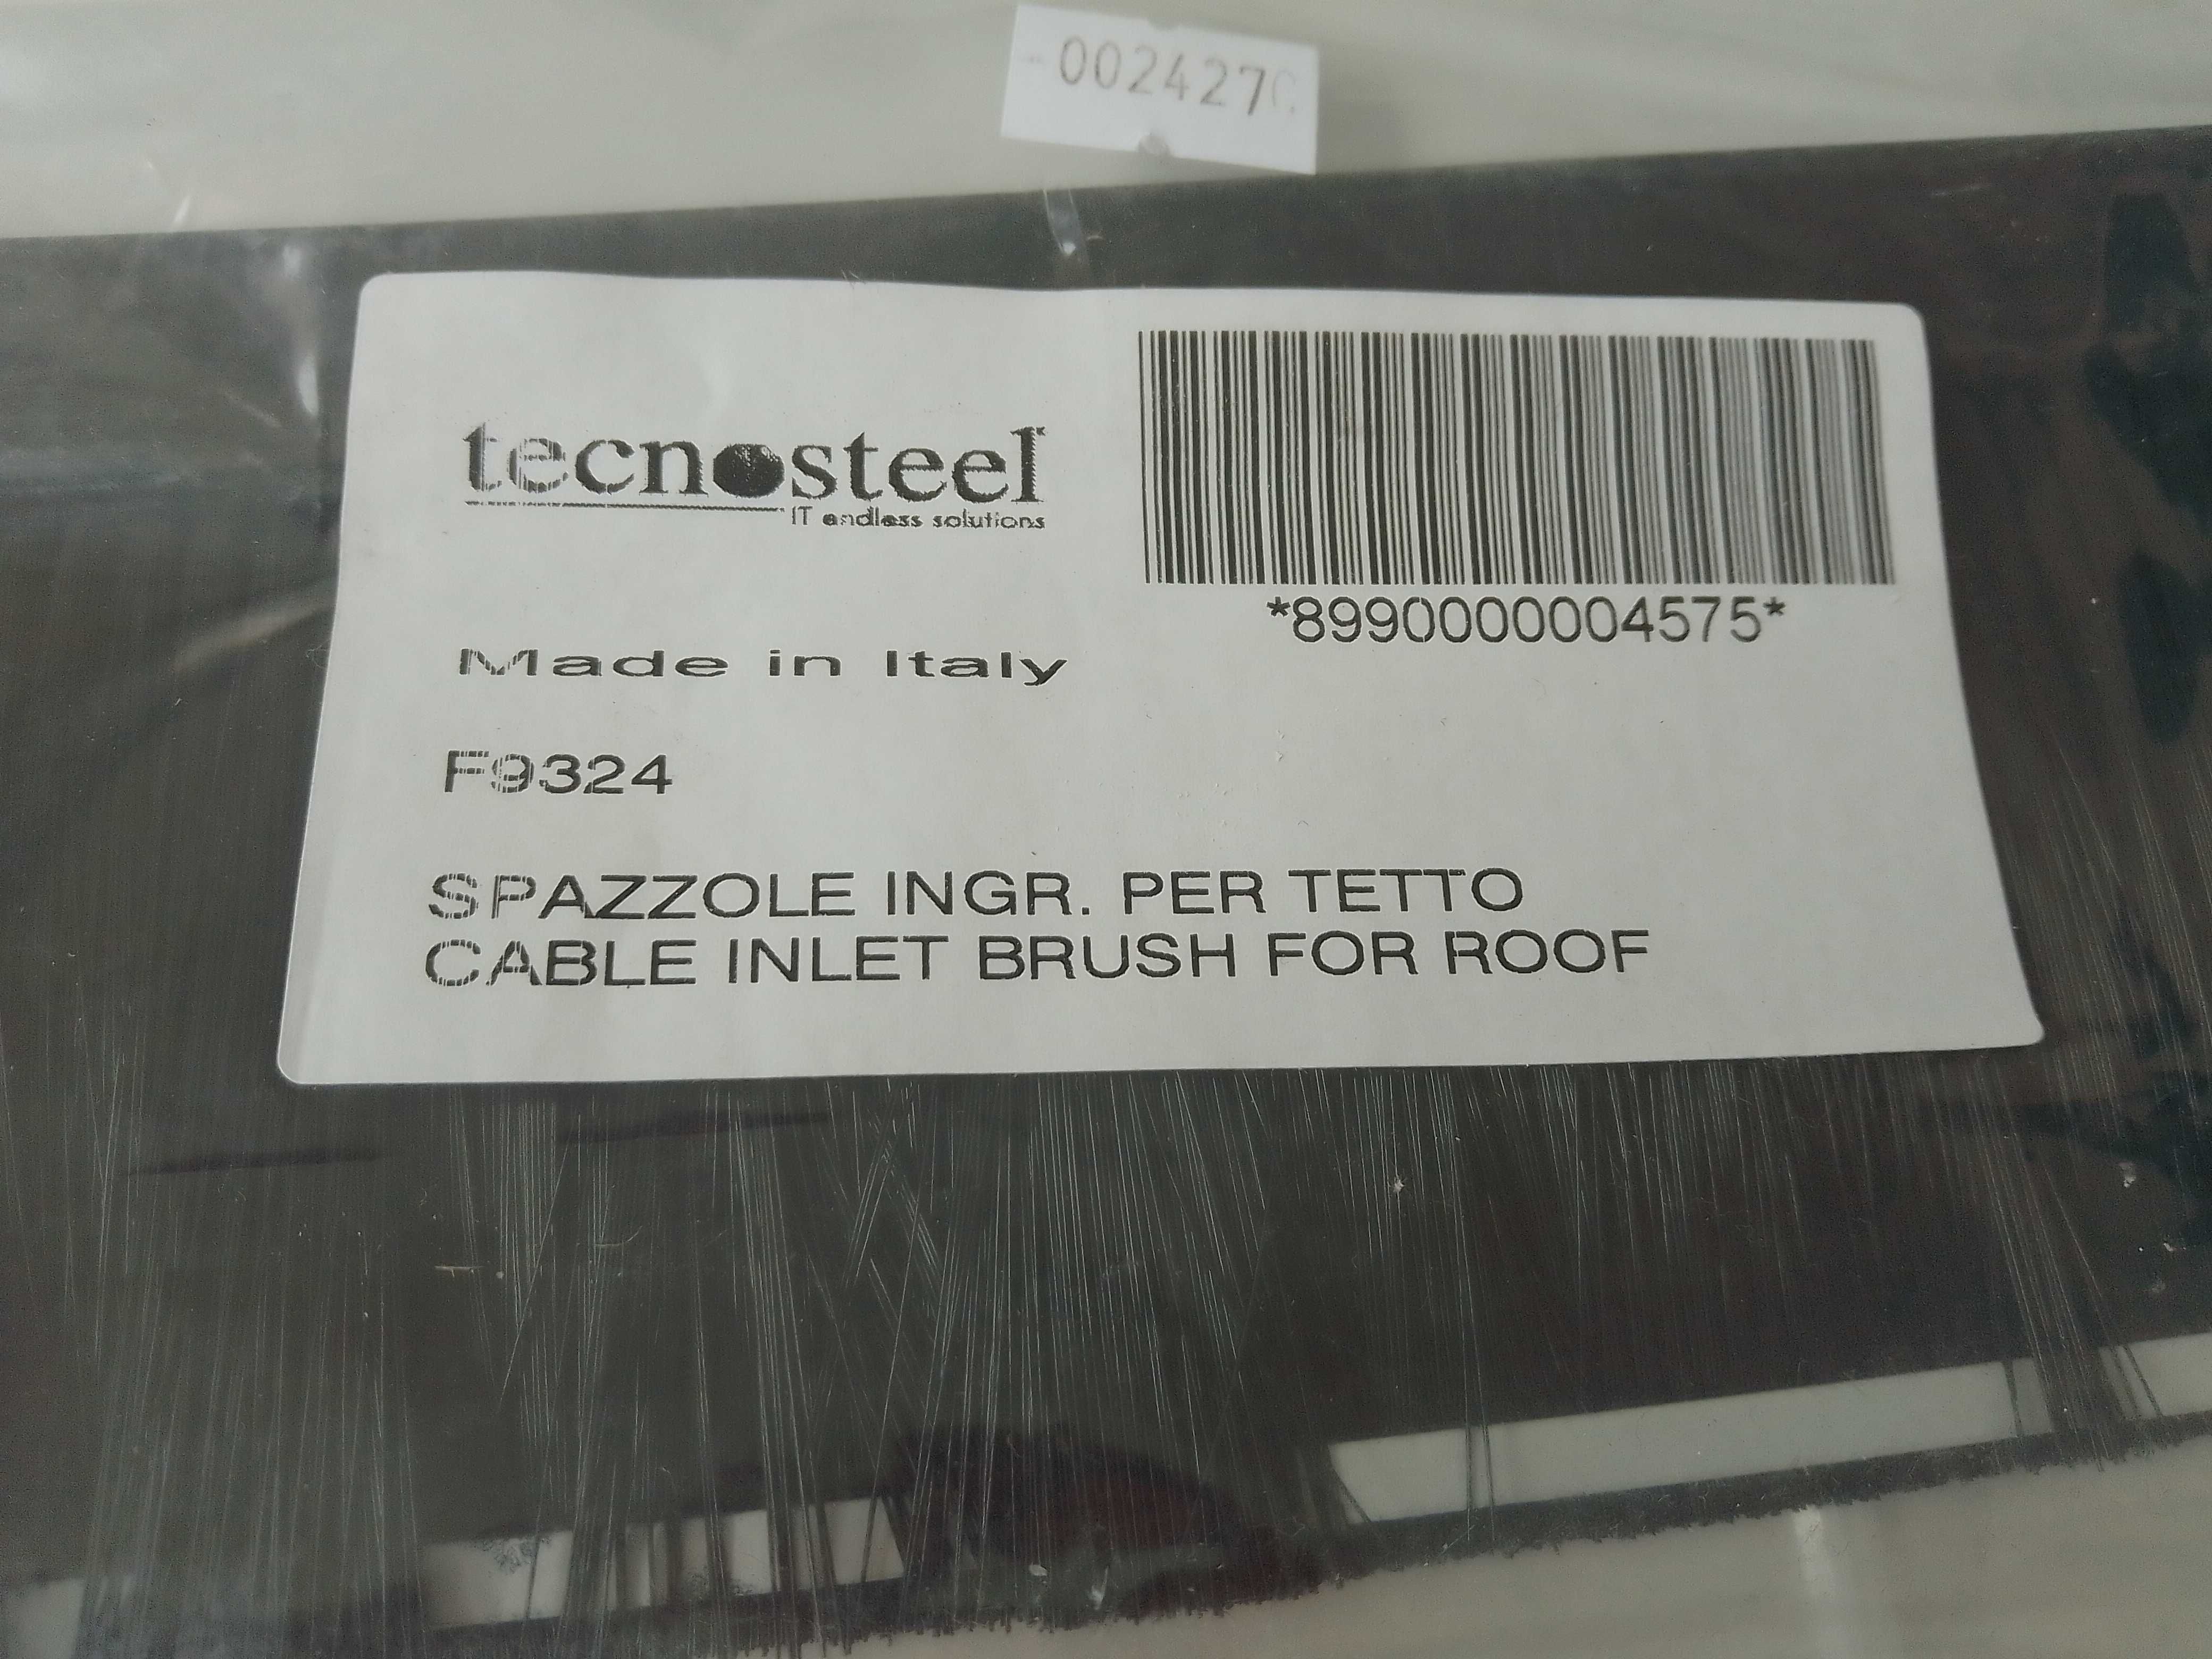 Przepust kablowy ze szczotką do szafy Tecno tecnpsteel F9324 (002427)